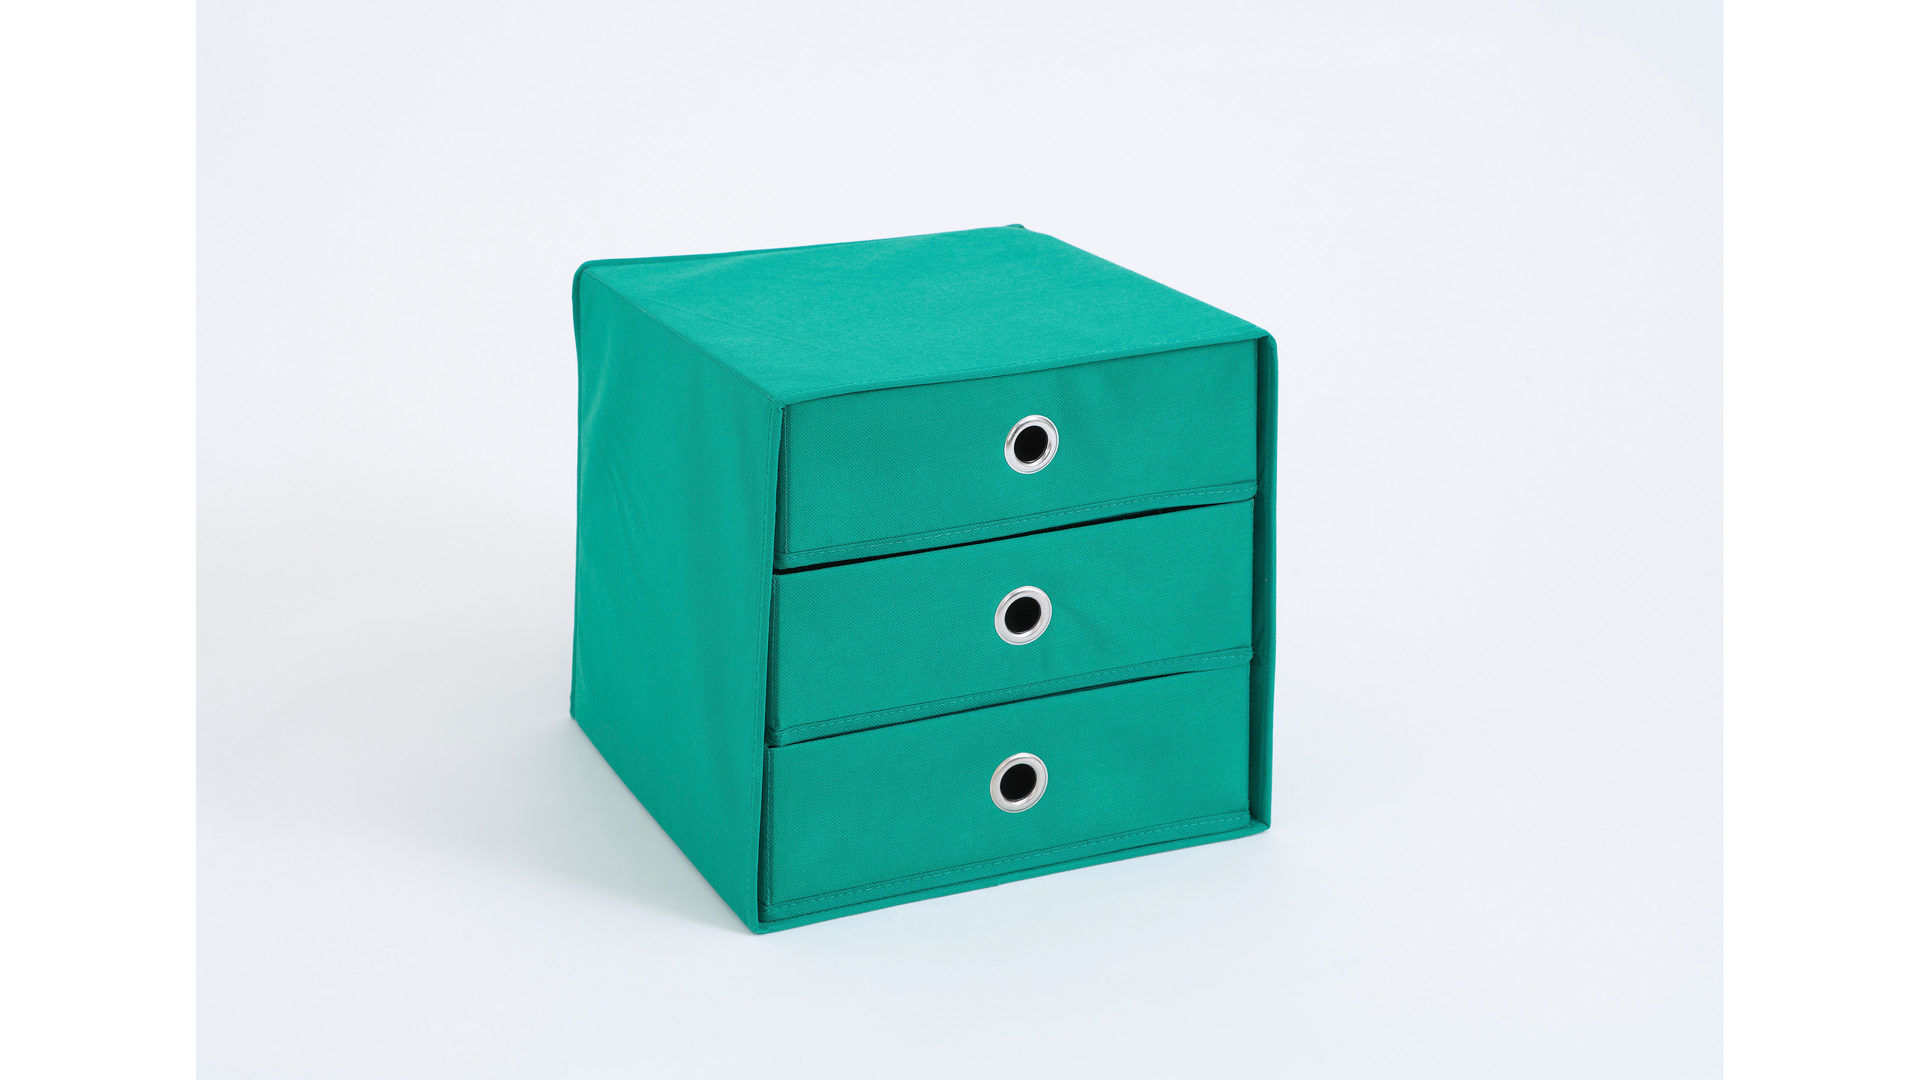 Faltbox Fmd furniture aus Stoff in Grün Faltbox mit drei Schubladen smaragdgrünes, verstärktes Vlies - drei Schubladen, ca. 32 x 32 cm